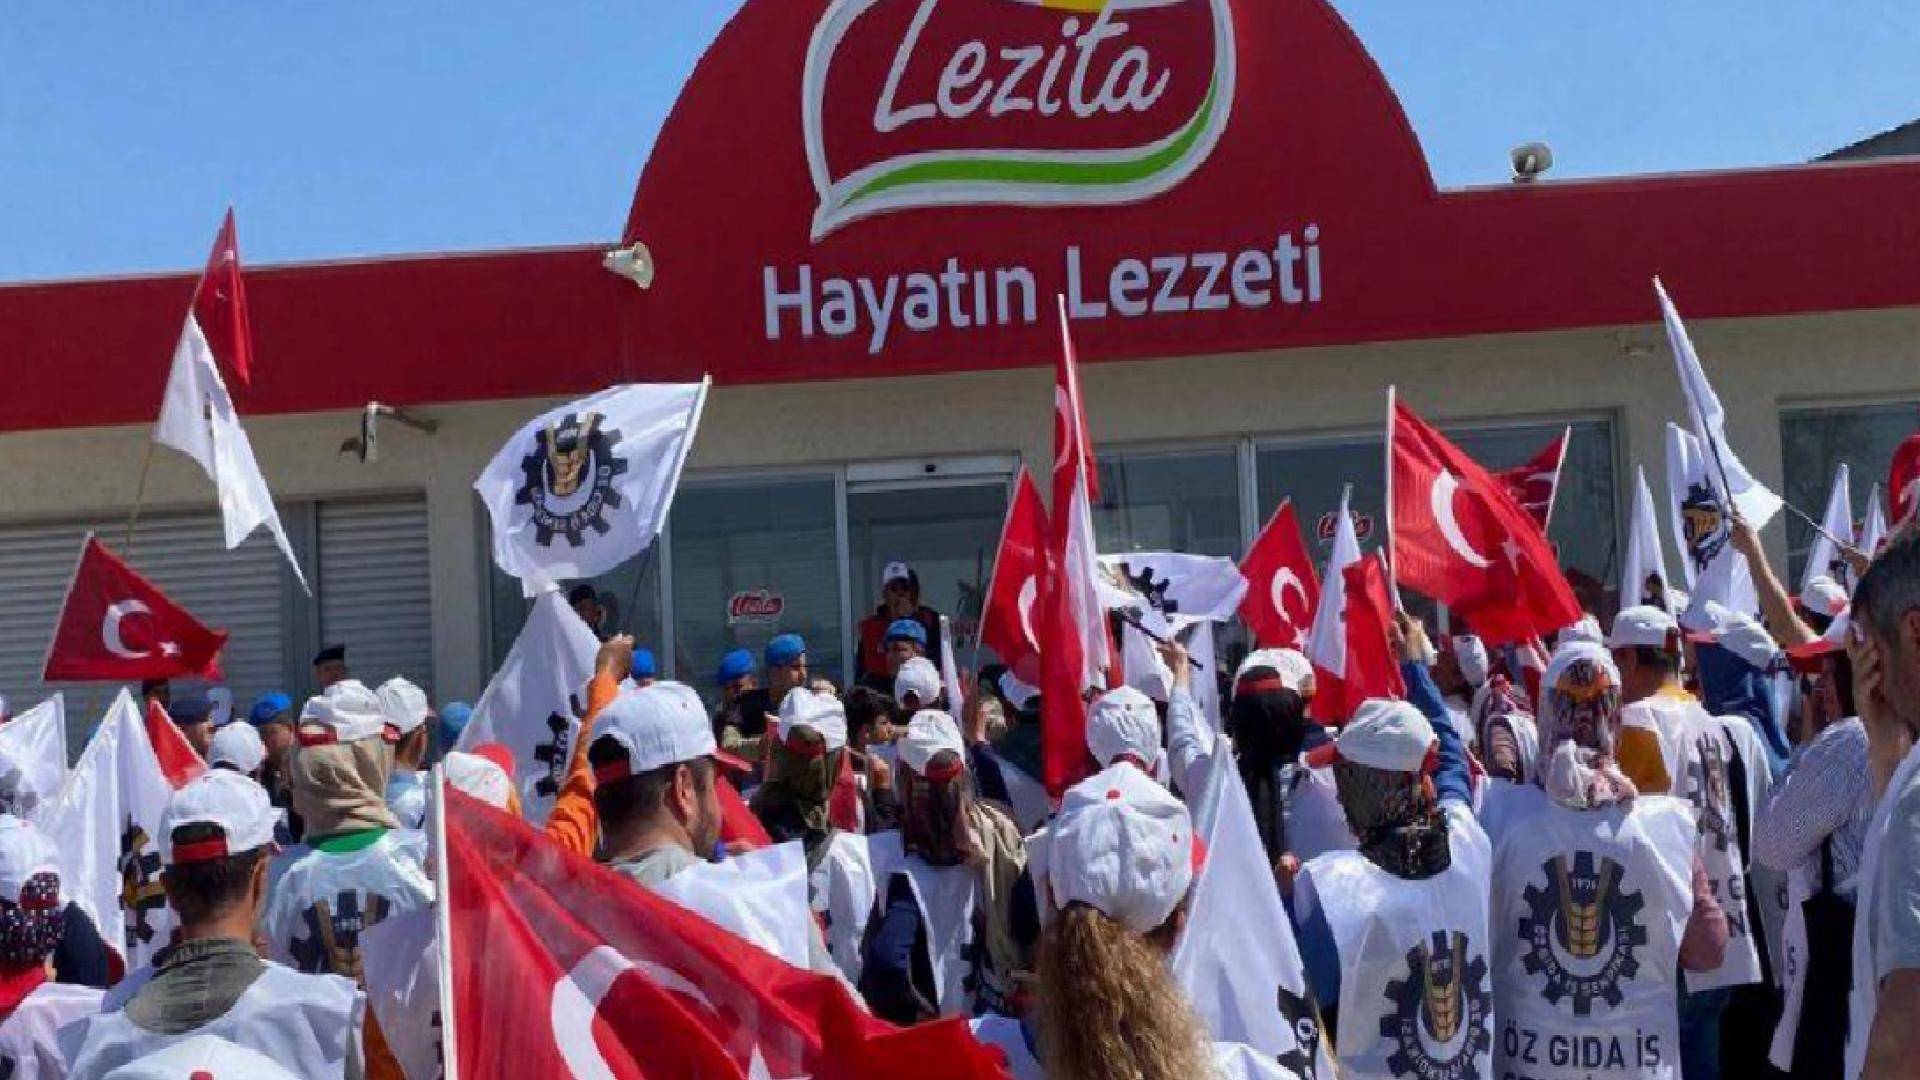 Türkiye’de Demokrasi: Sert müdahaleli Lezita grevinde Türk işçilerin yerine Hintli işçi aldılar!